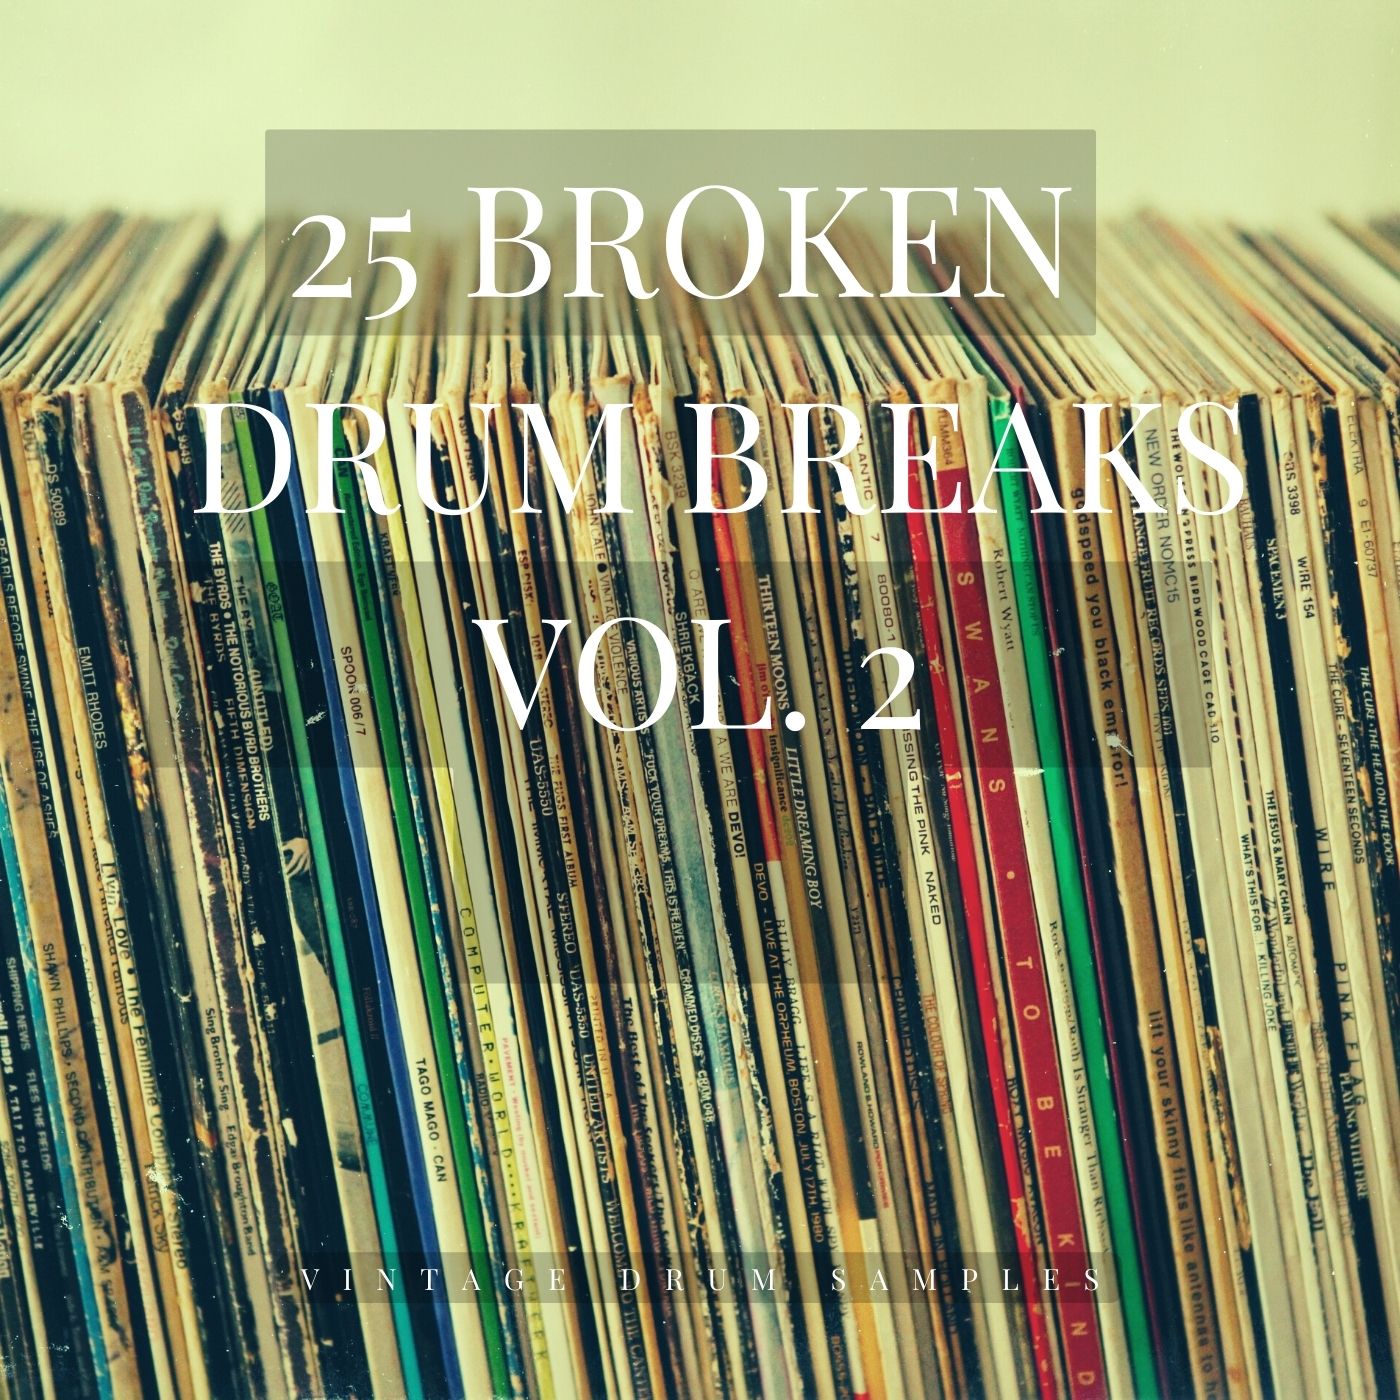 Vintage Drum Samples - Broken Drum Breaks Vol. 2 [Marketplace]